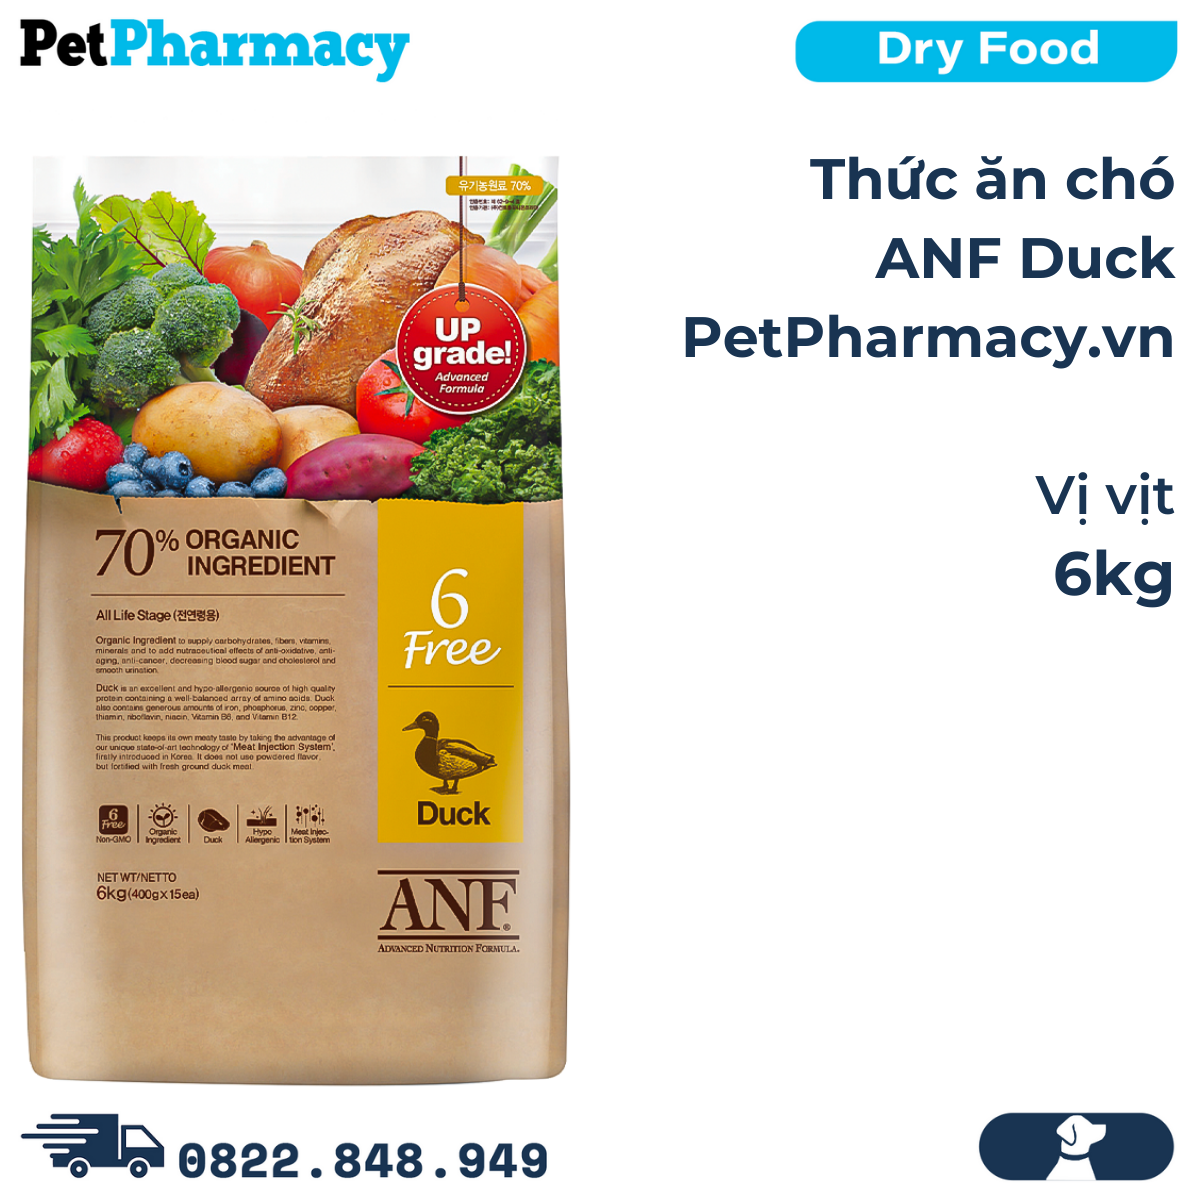 Thức ăn chó ANF vịt 6kg - Duck PetPharmacy